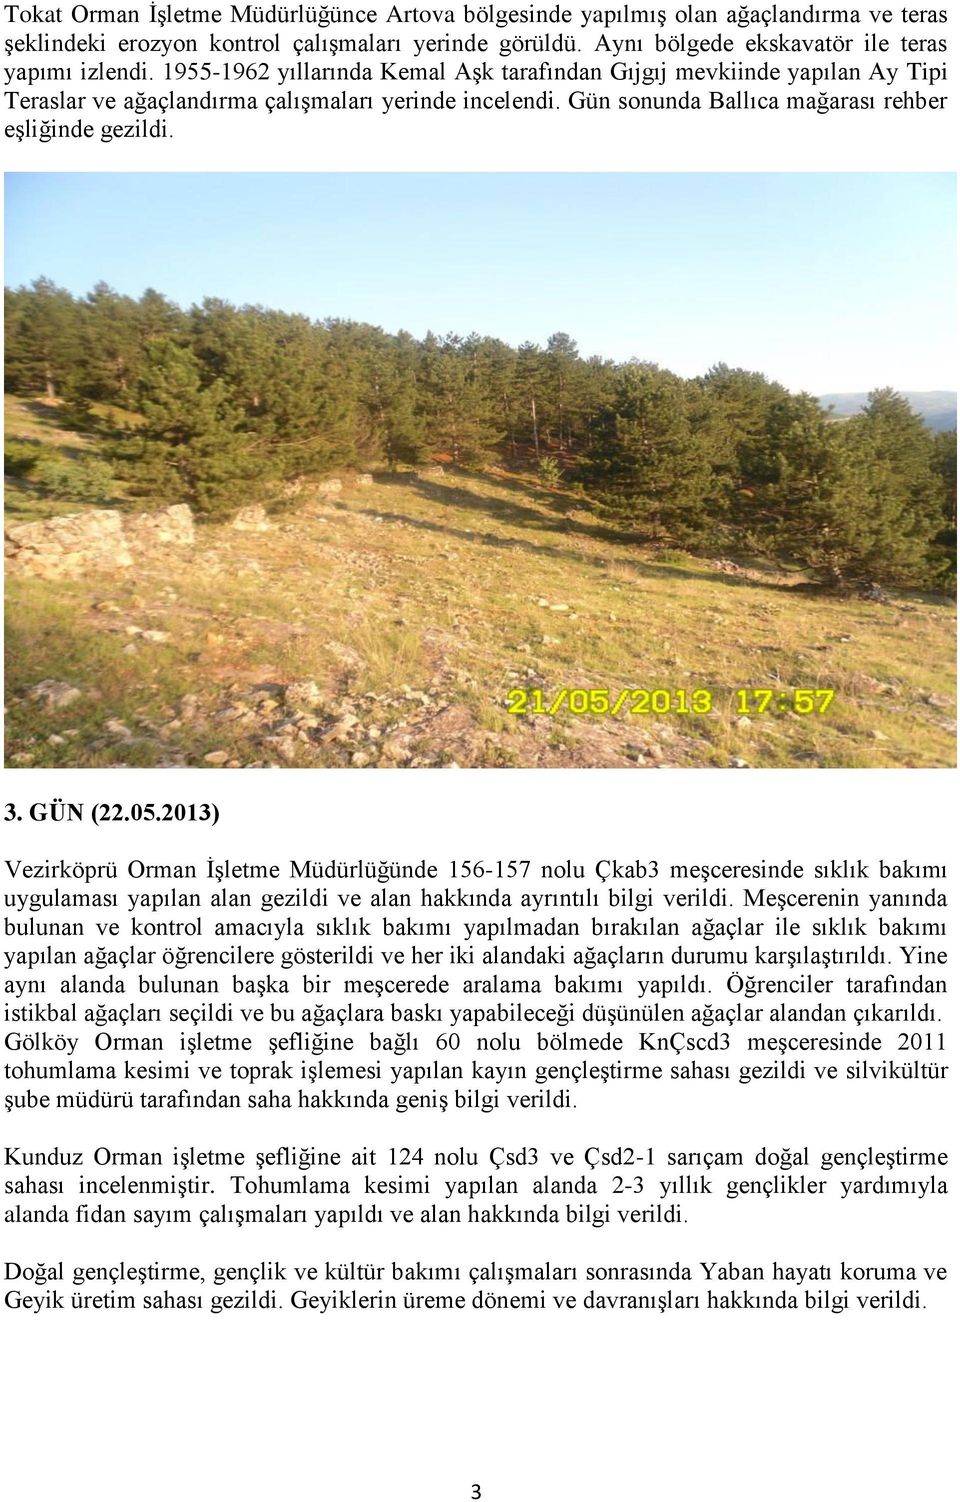 2013) Vezirköprü Orman ĠĢletme Müdürlüğünde 156-157 nolu Çkab3 meģceresinde sıklık bakımı uygulaması yapılan alan gezildi ve alan hakkında ayrıntılı bilgi verildi.